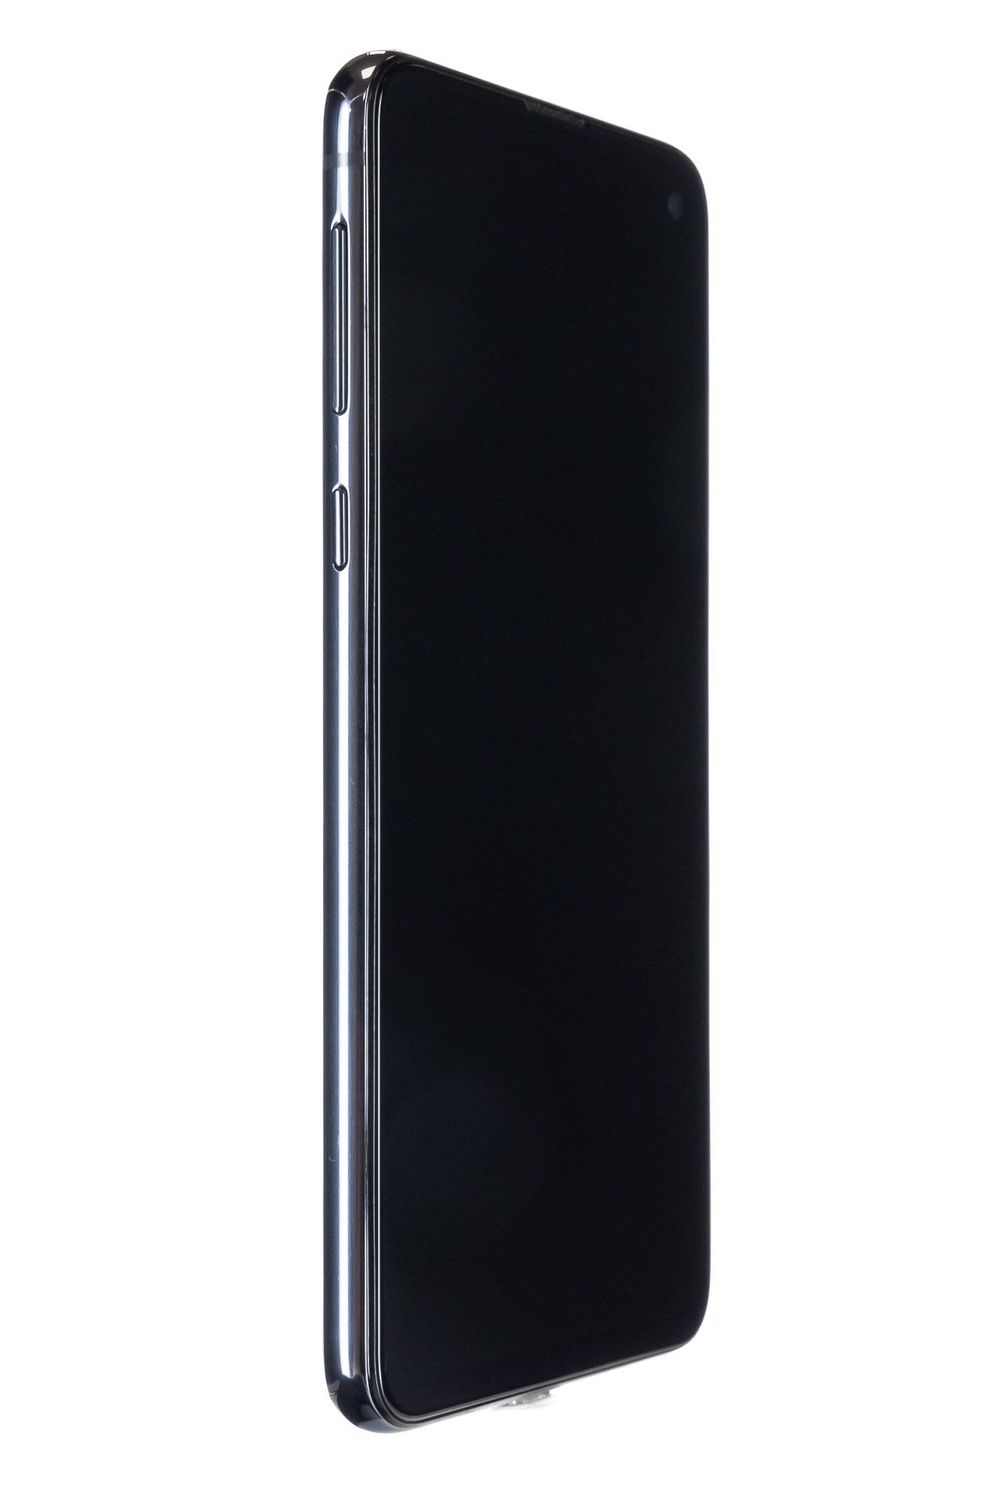 Mobiltelefon Samsung Galaxy S10 e Dual Sim, Prism Black, 256 GB, Excelent